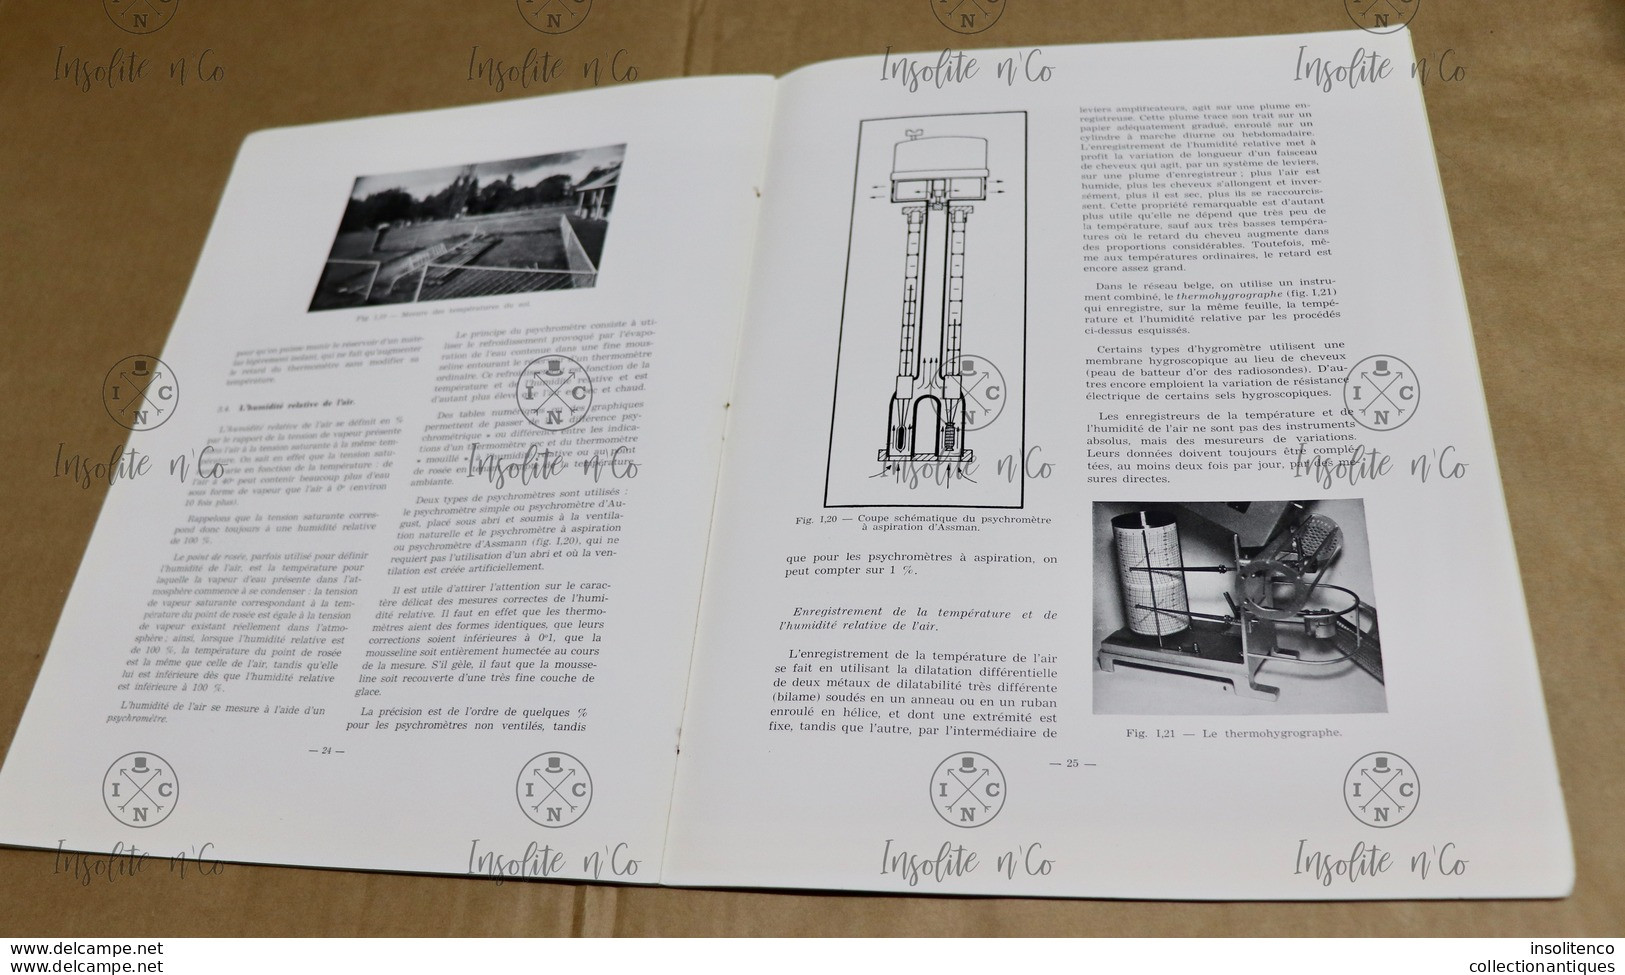 Observations Et Instruments Météorologiques - Dufour Et Poncelet - 1954 - Institut Royal Météorologique De Belgique - Altri & Non Classificati